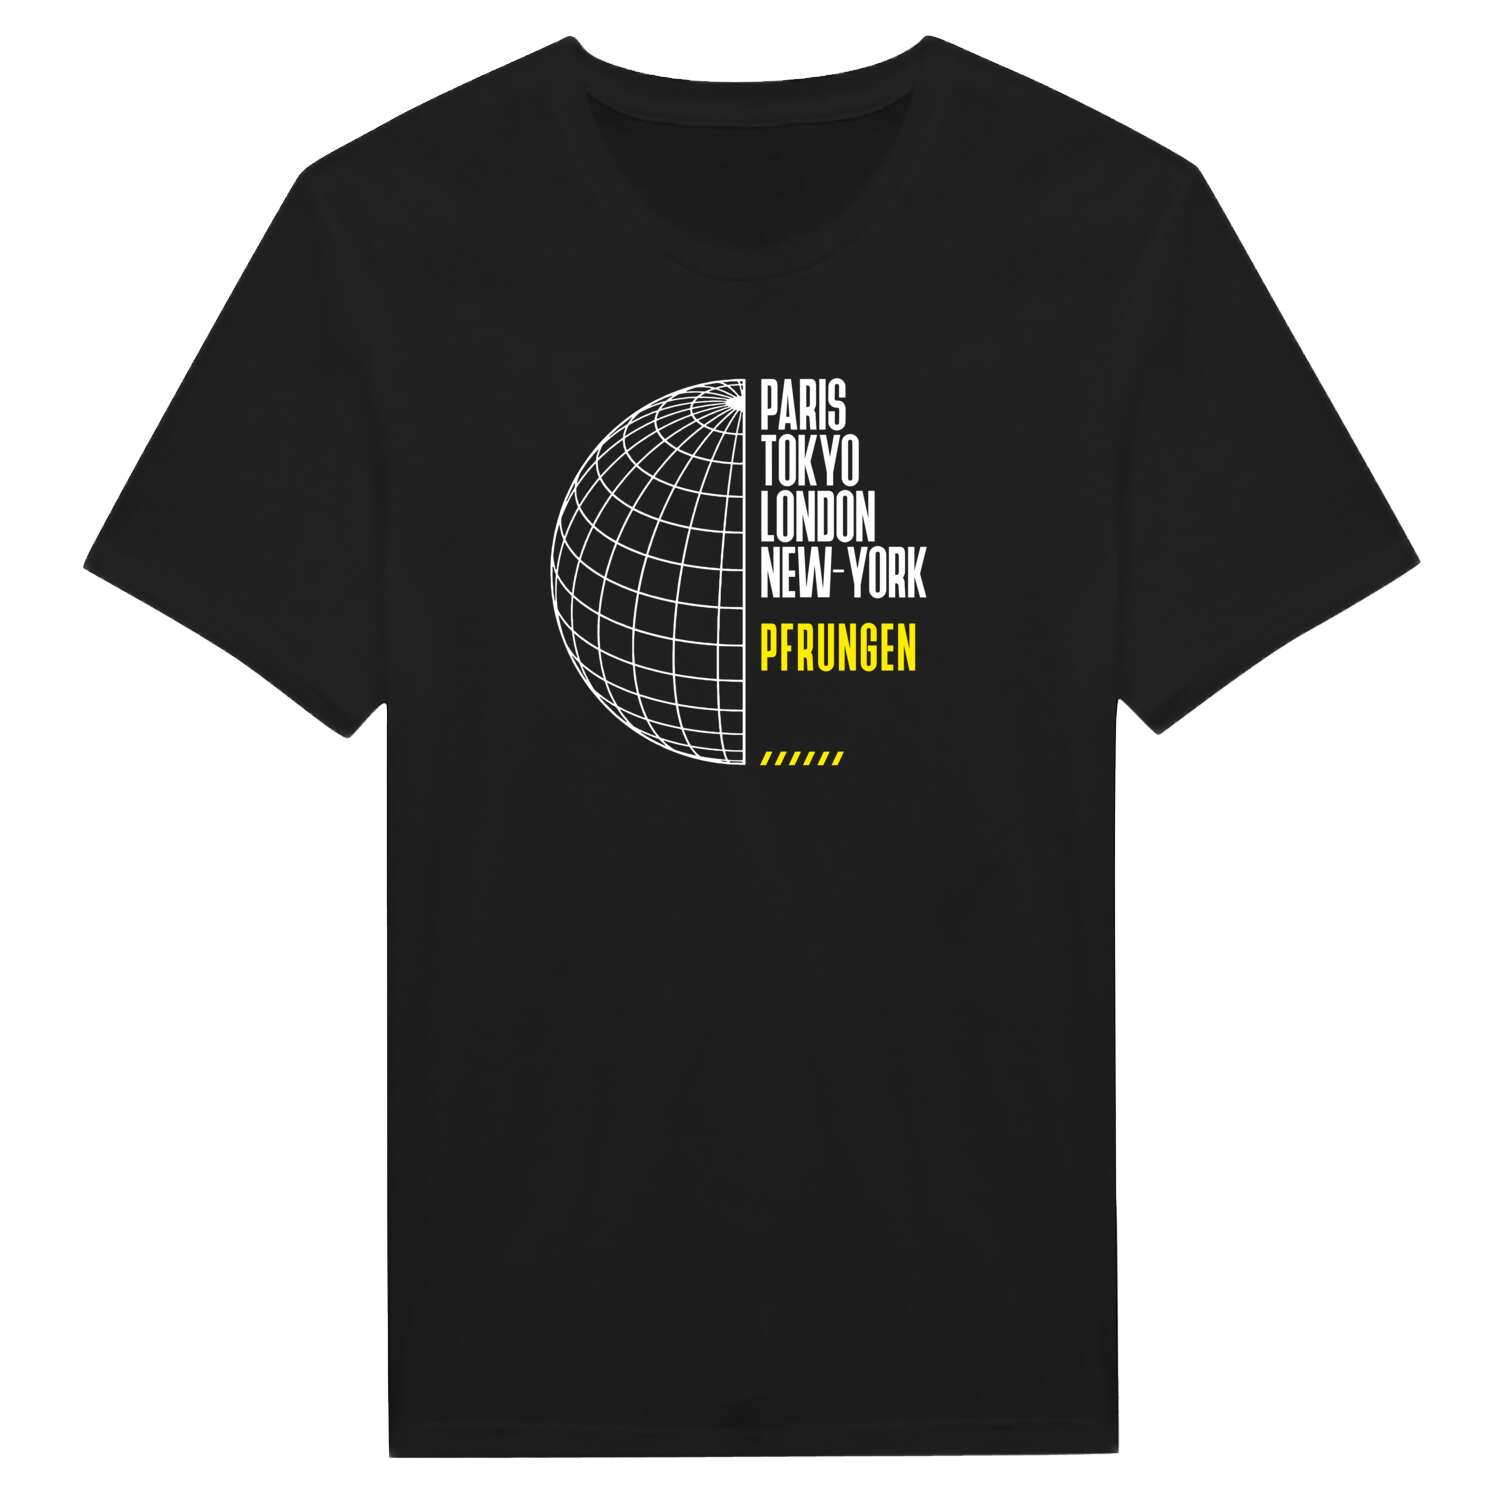 Pfrungen T-Shirt »Paris Tokyo London«